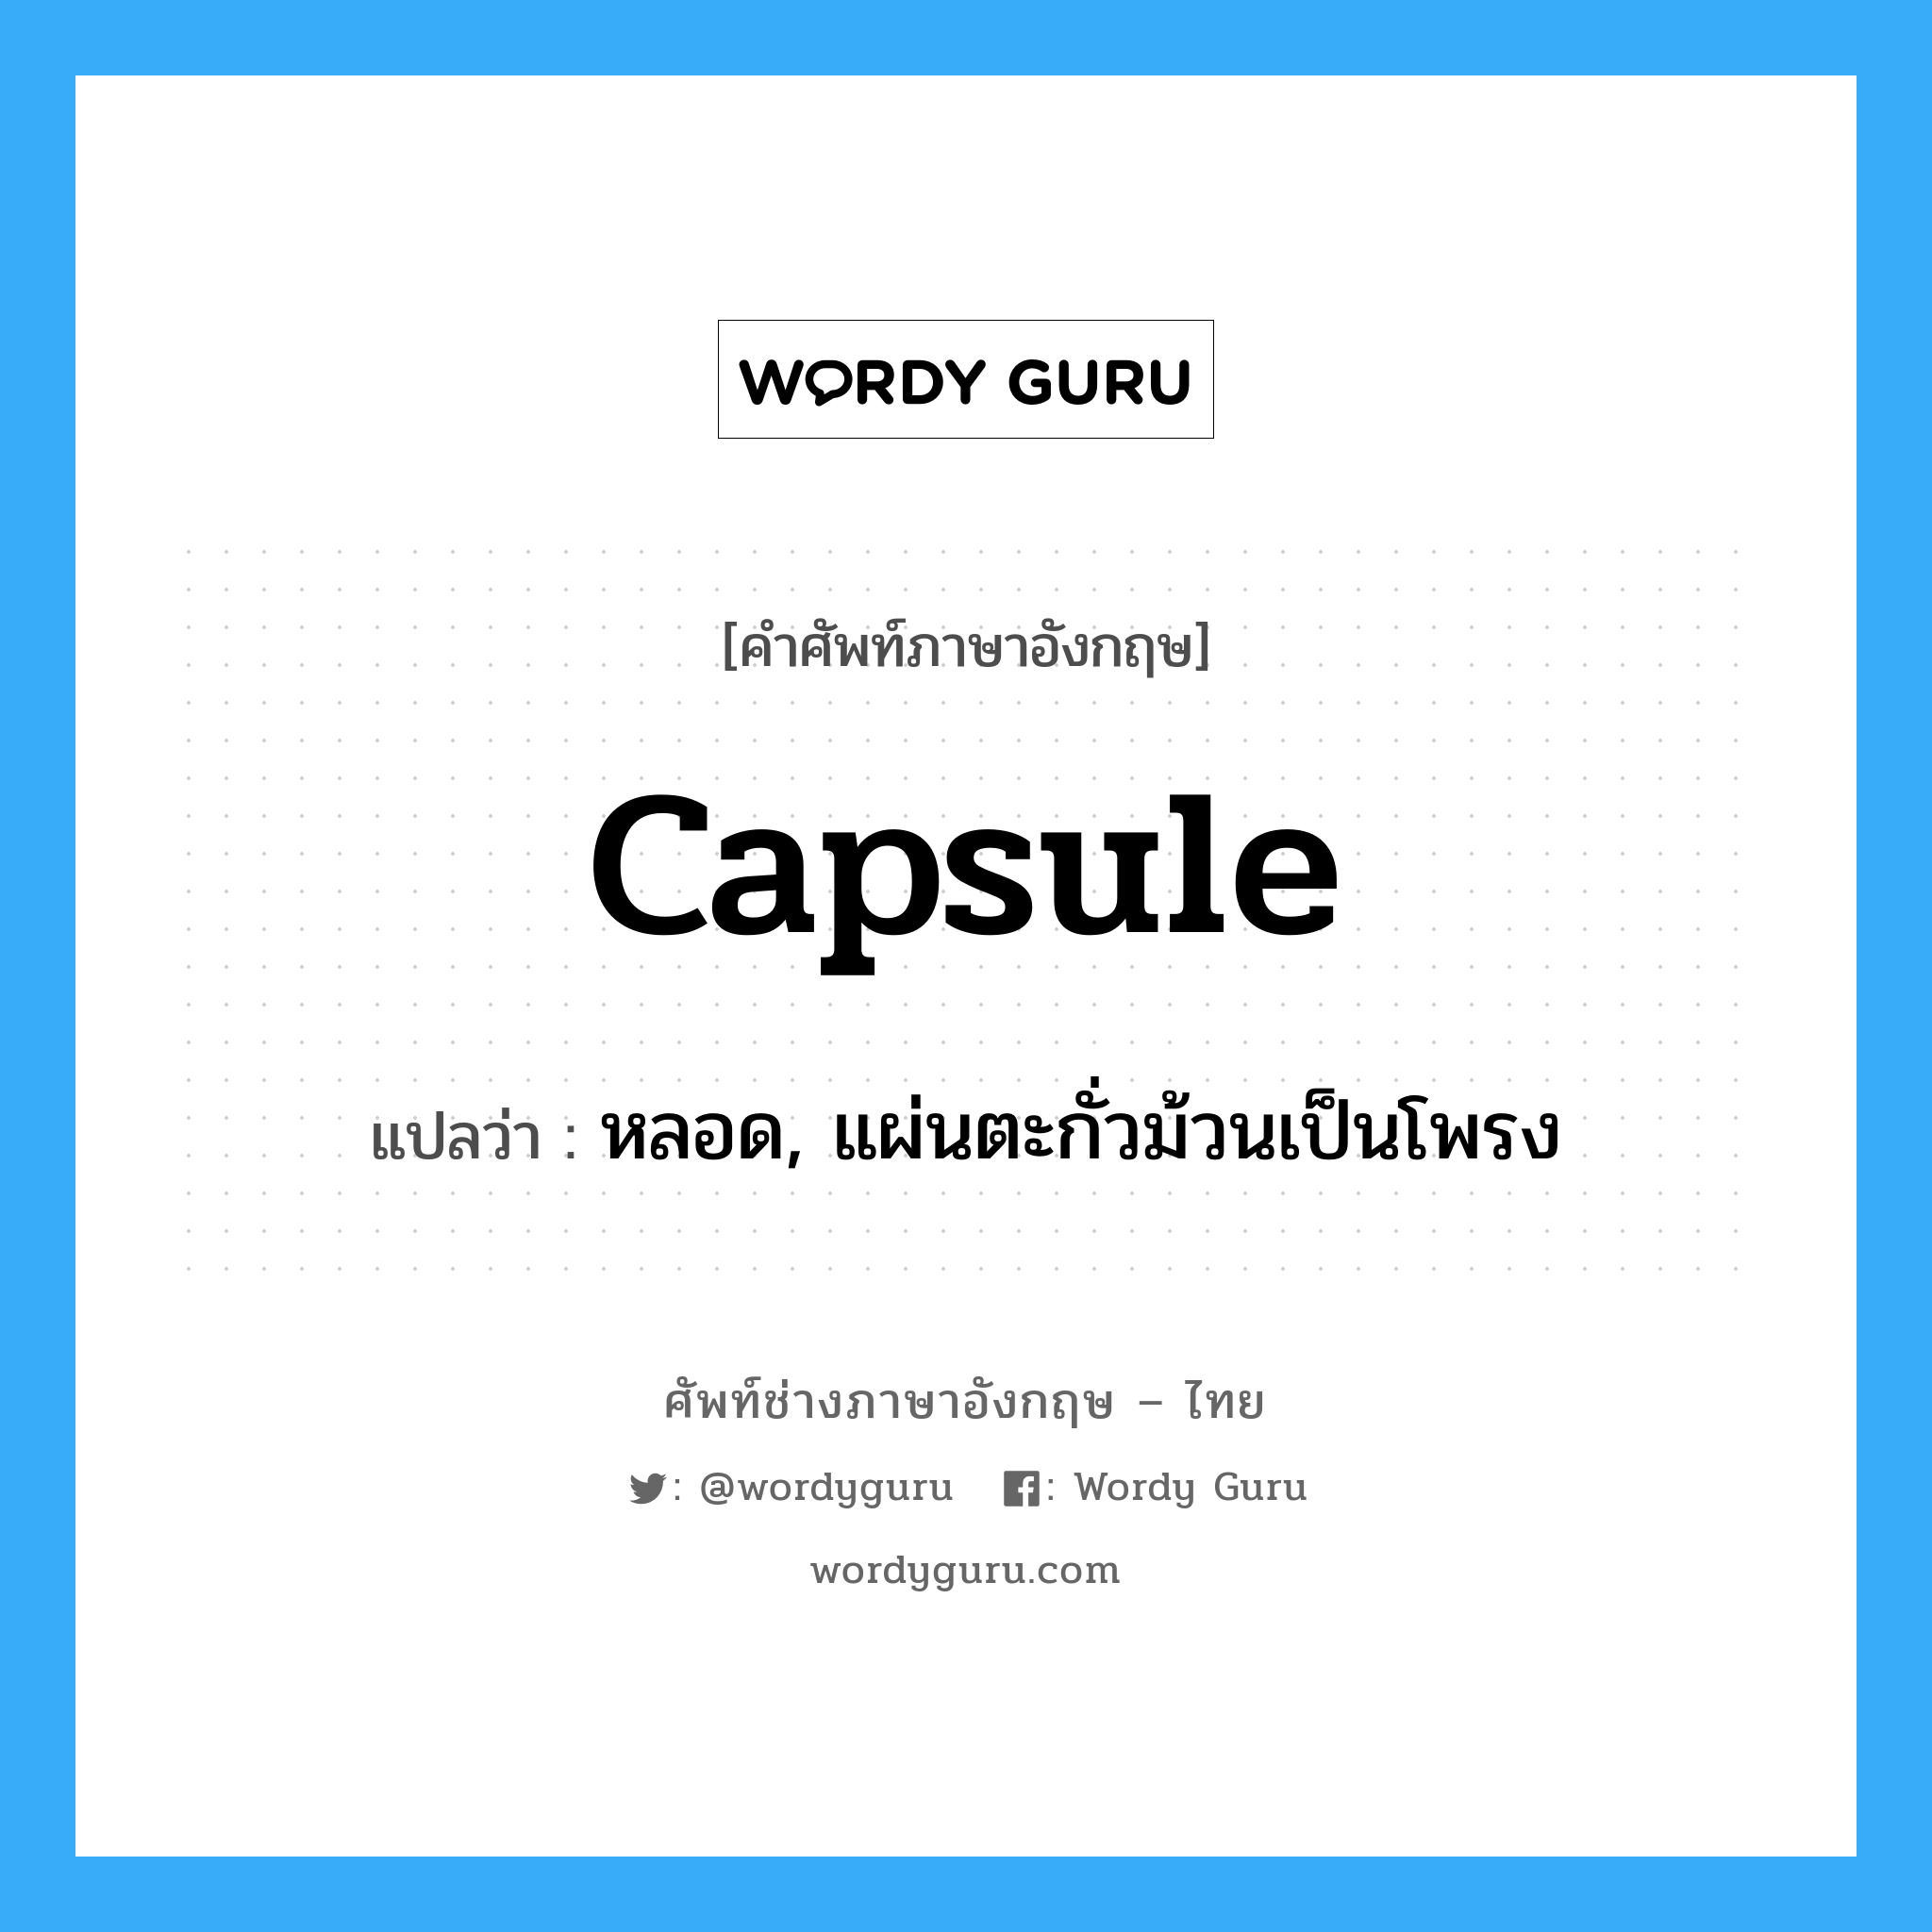 capsule แปลว่า?, คำศัพท์ช่างภาษาอังกฤษ - ไทย capsule คำศัพท์ภาษาอังกฤษ capsule แปลว่า หลอด, แผ่นตะกั่วม้วนเป็นโพรง